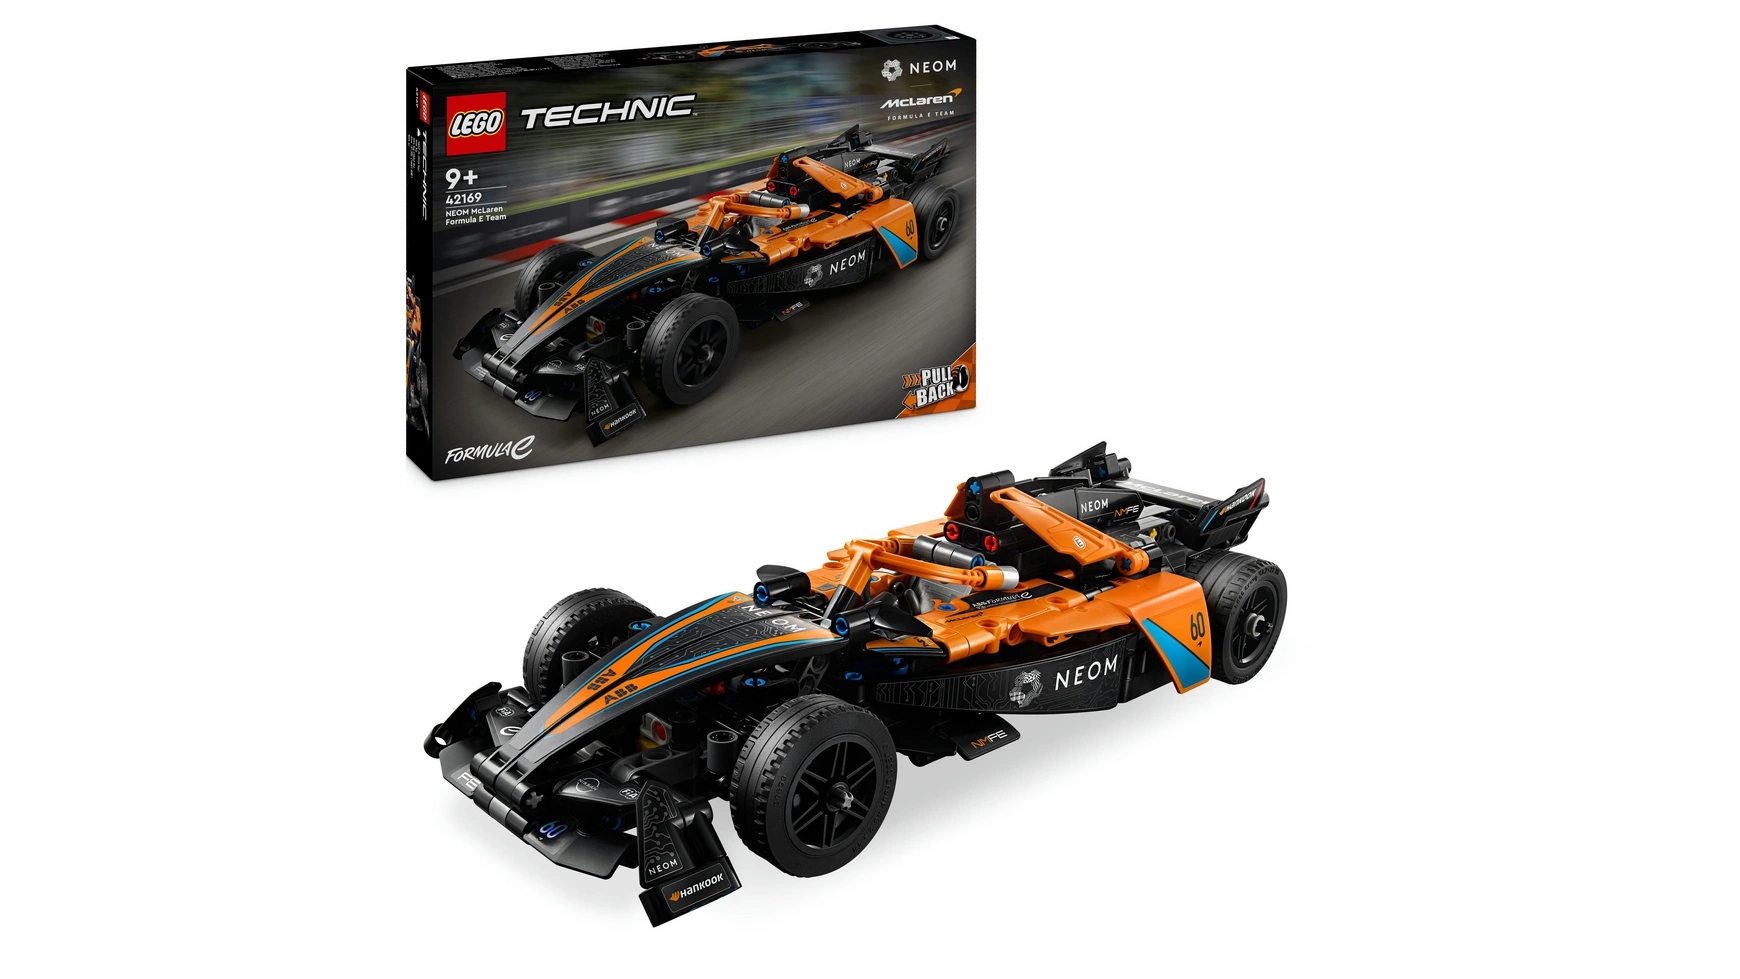 Lego Гоночный автомобиль Technic NEOM McLaren Formula E lego technic mercedes amg f1 w14 e performance гоночный автомобиль в подарок